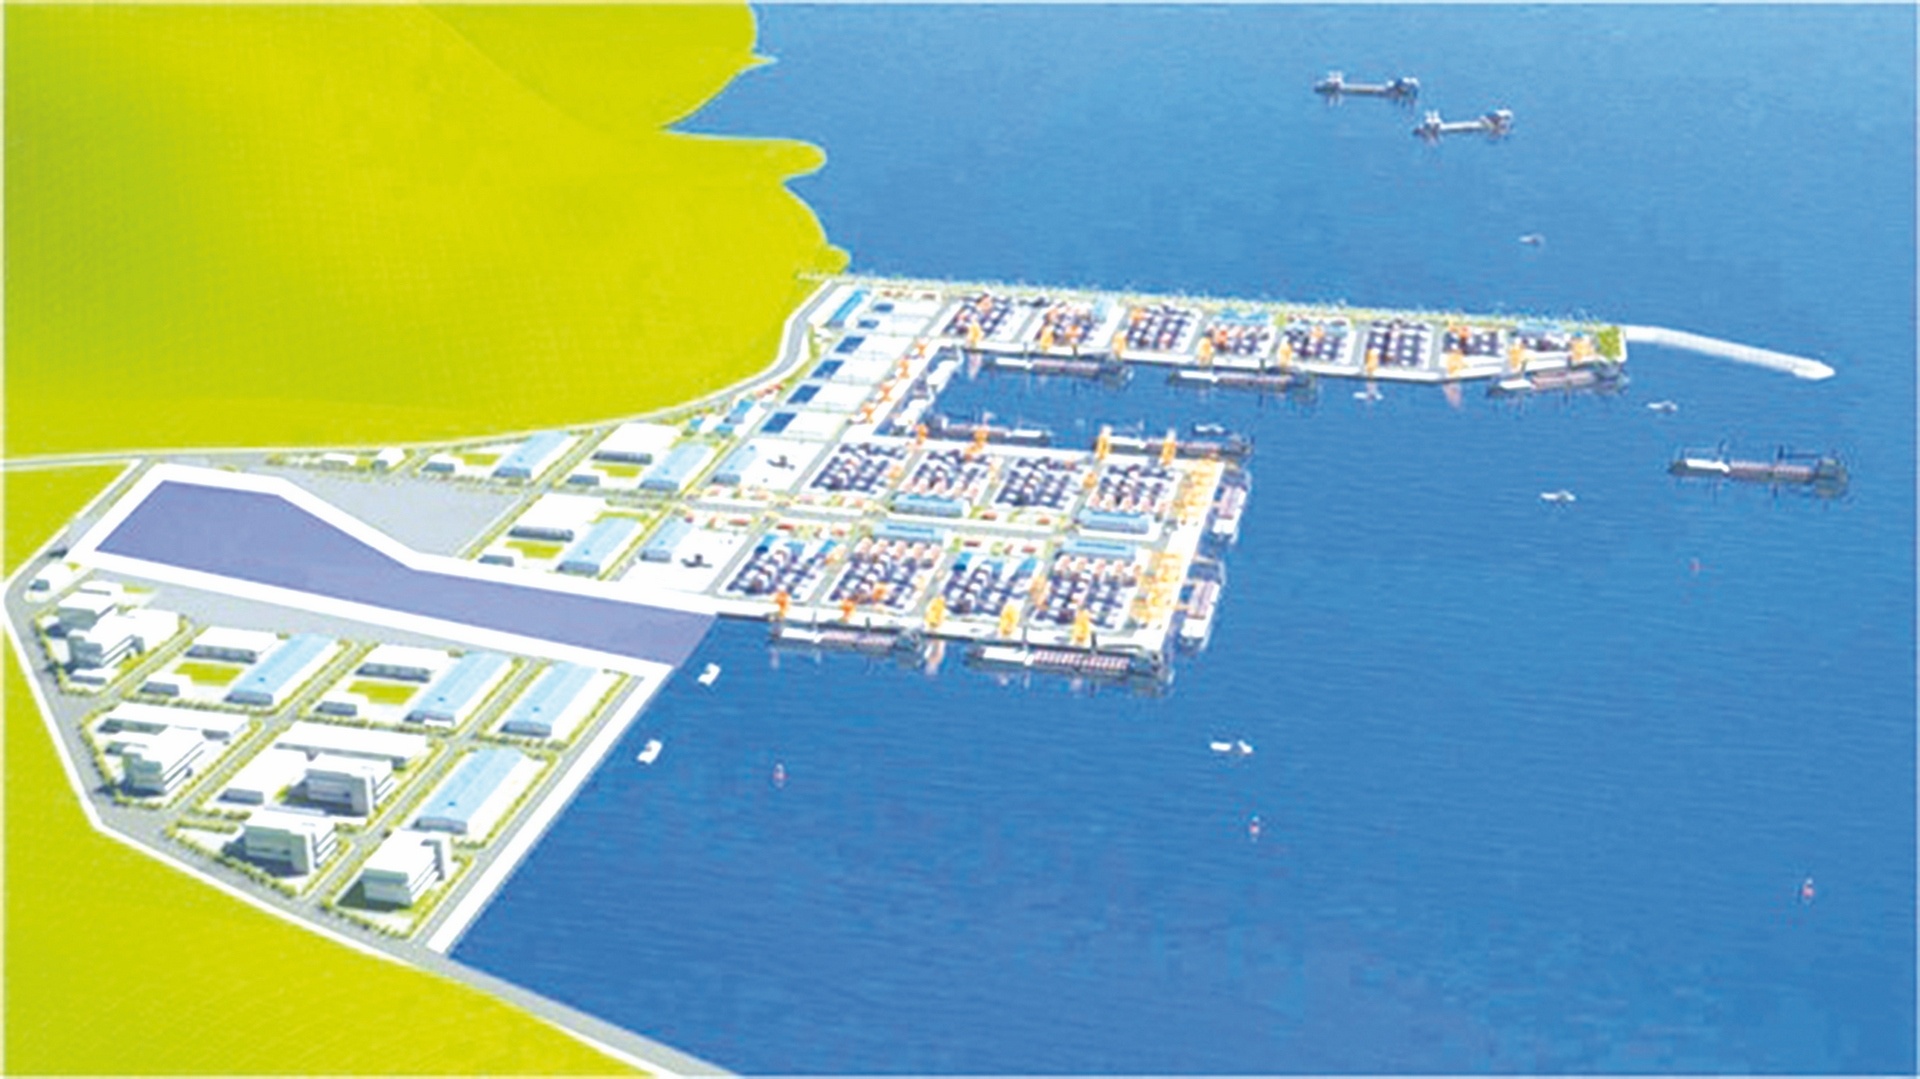 Lo chậm đầu tư cơ sở hạ tầng dùng chung tại cảng Liên Chiểu- Ảnh 1.